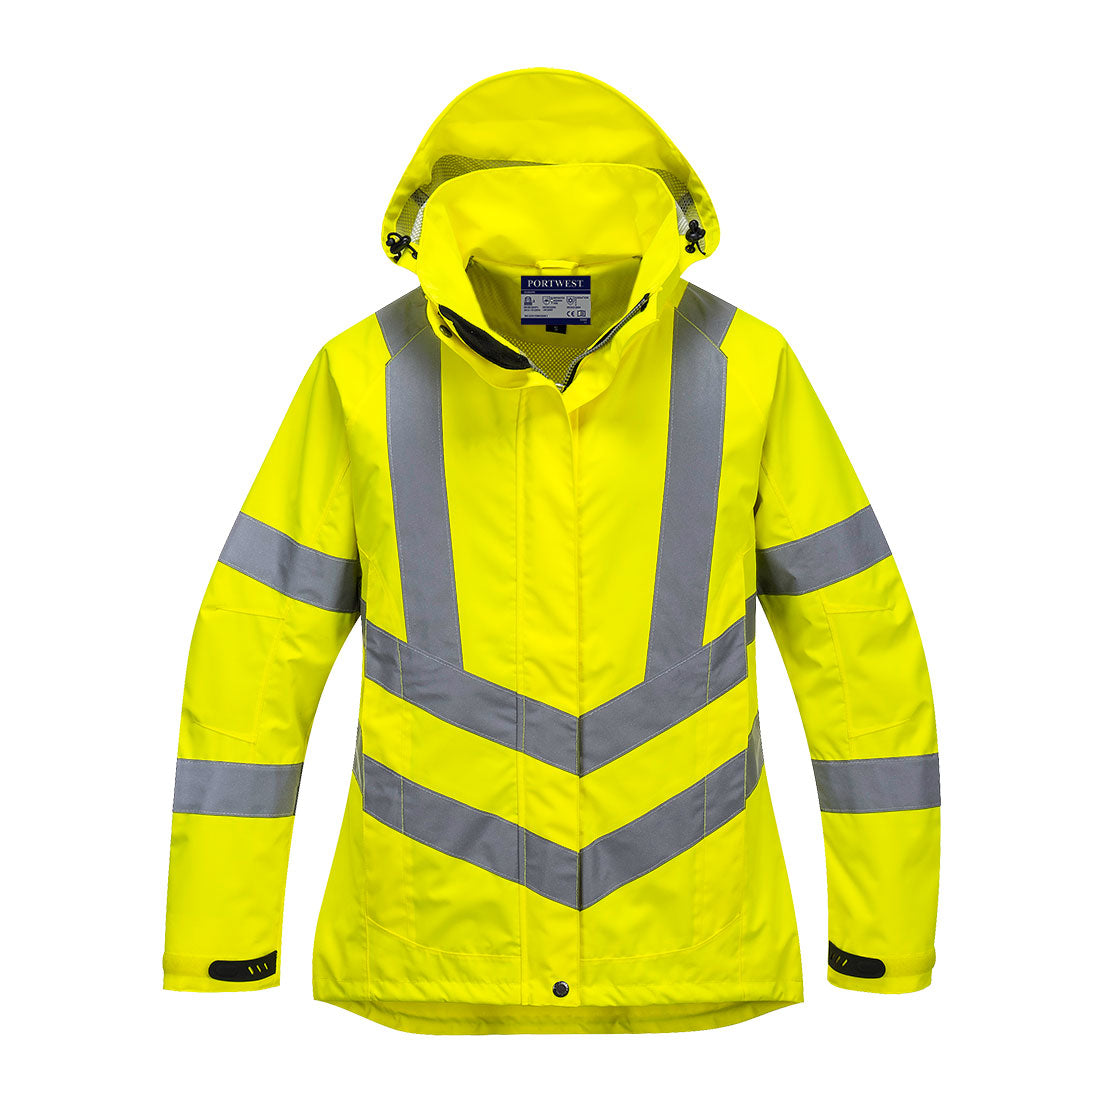 Portwest Ladies Hi-Vis Breathable Jacket #colour_yellow